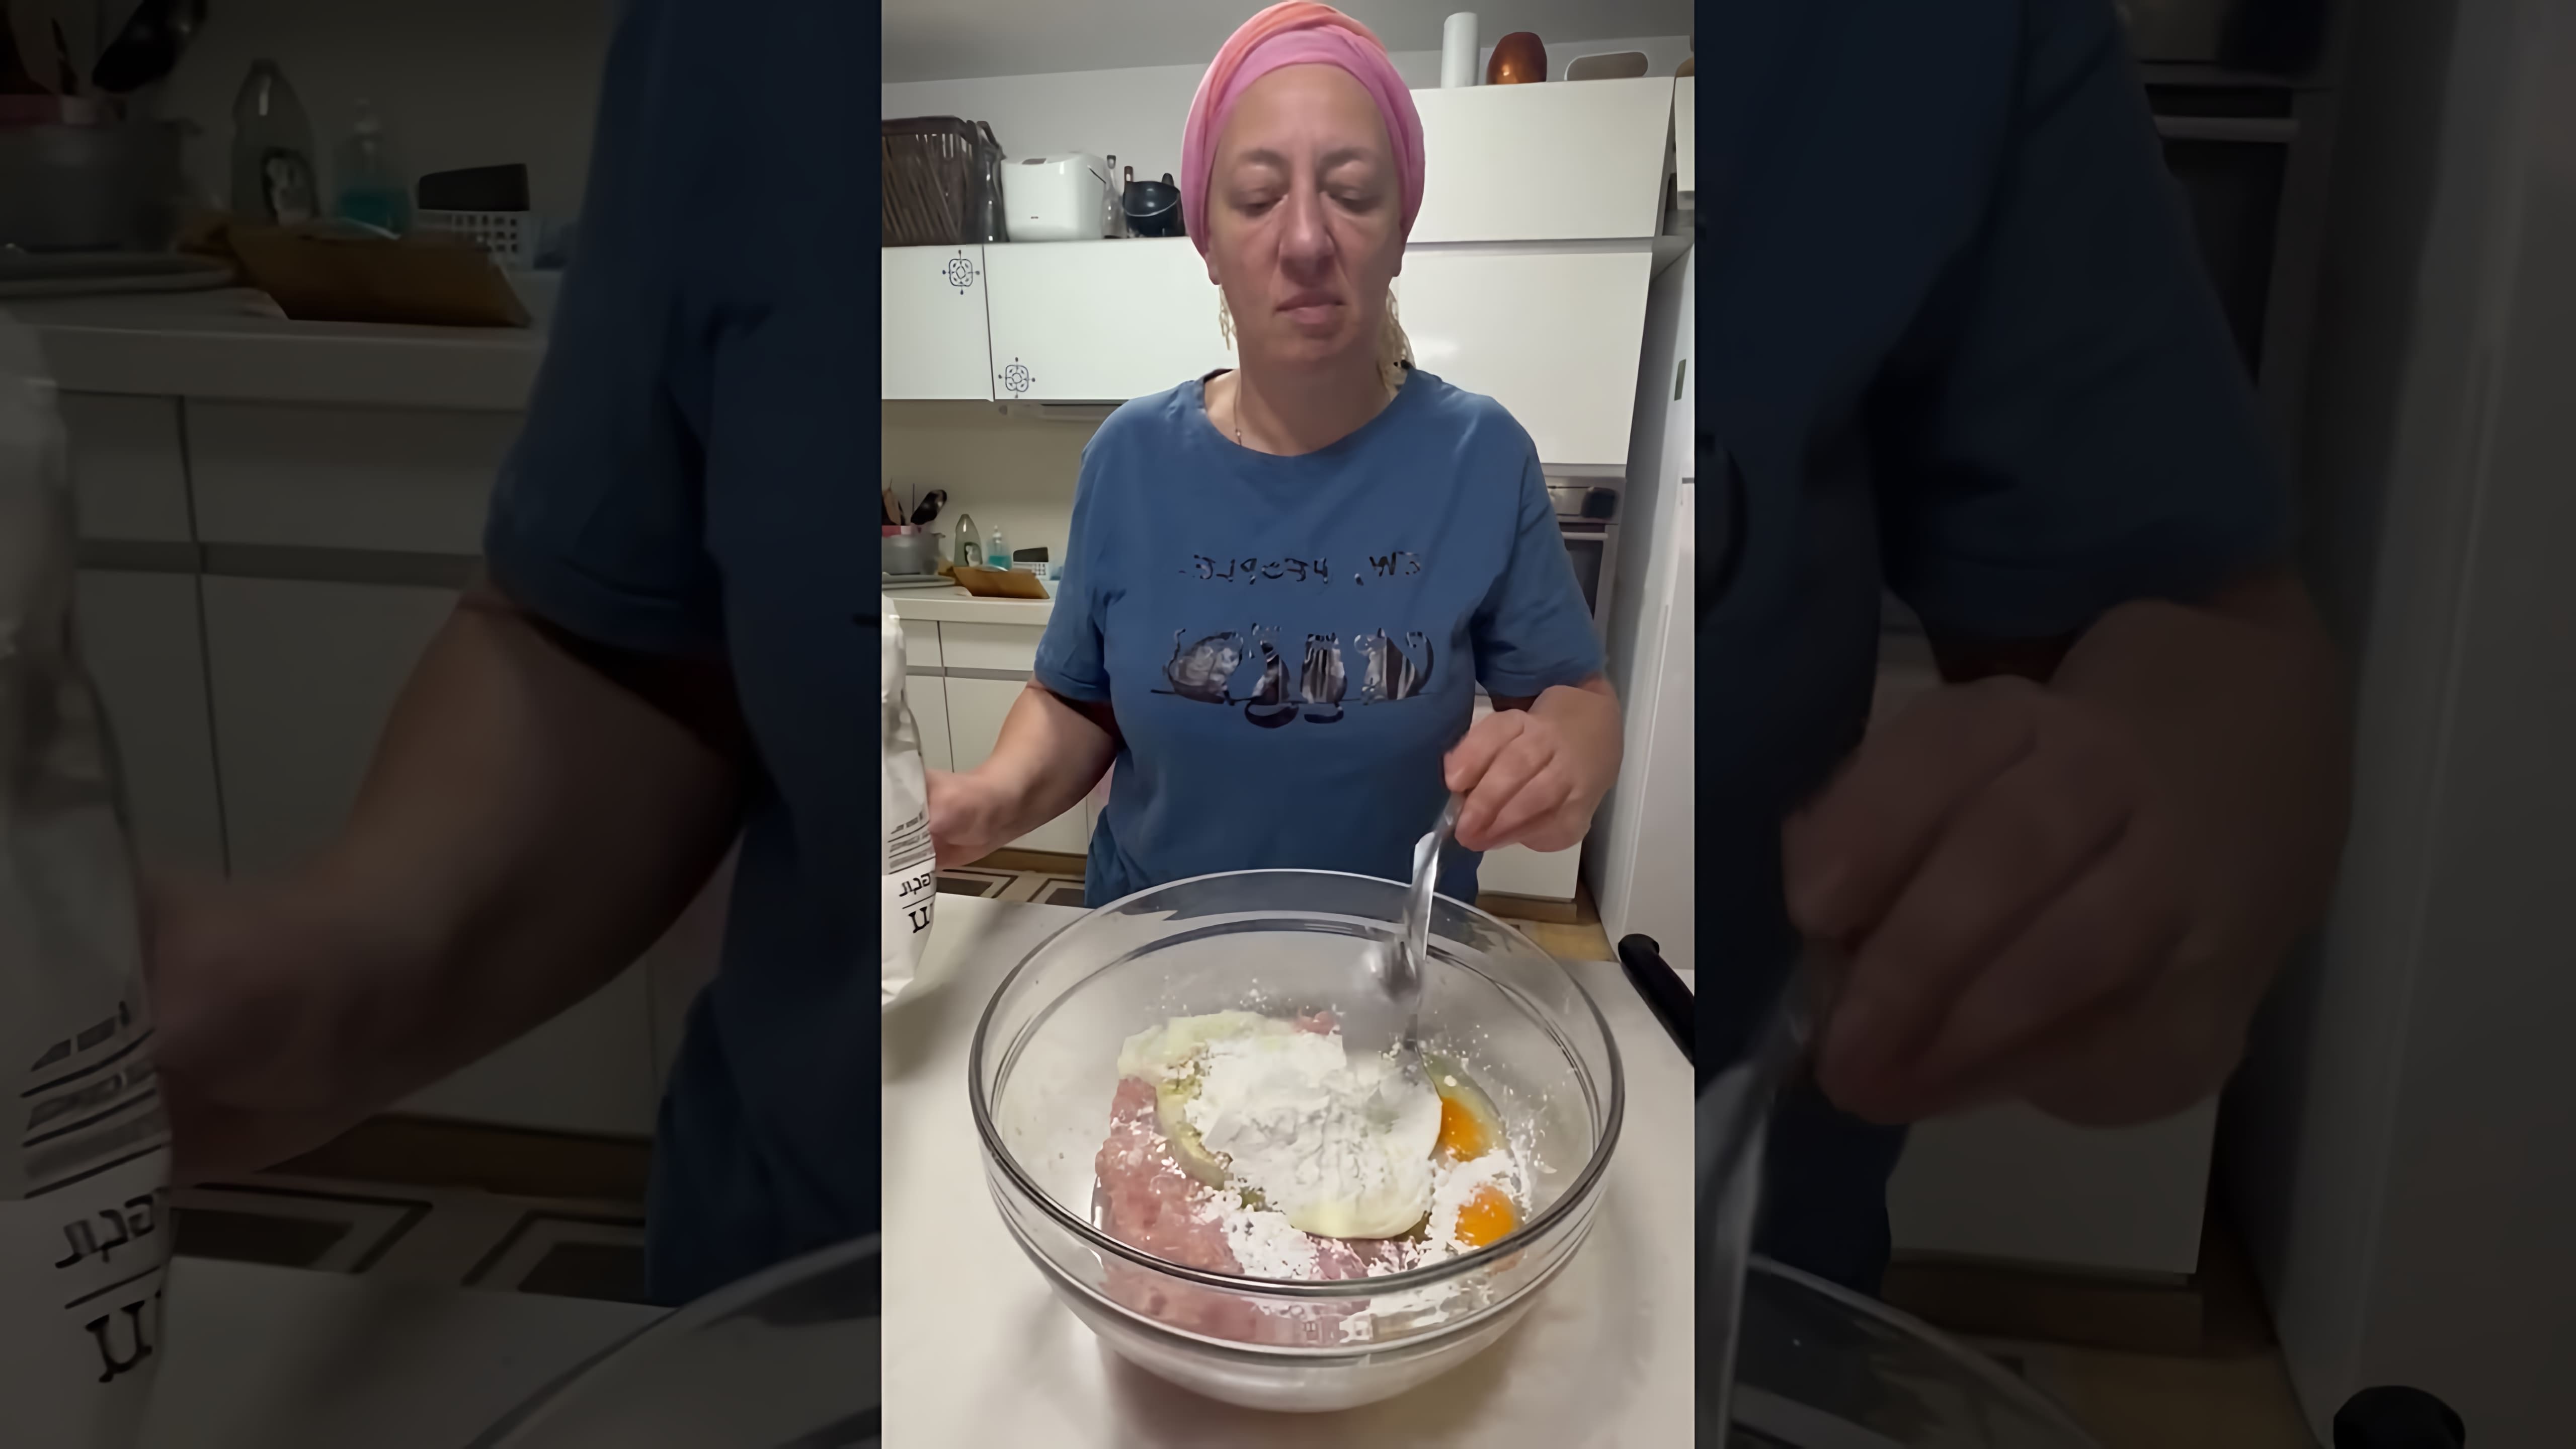 "Оладьи куриные: быстро и вкусно" - это видео-ролик, который показывает, как приготовить вкусные и быстрые оладьи из курицы